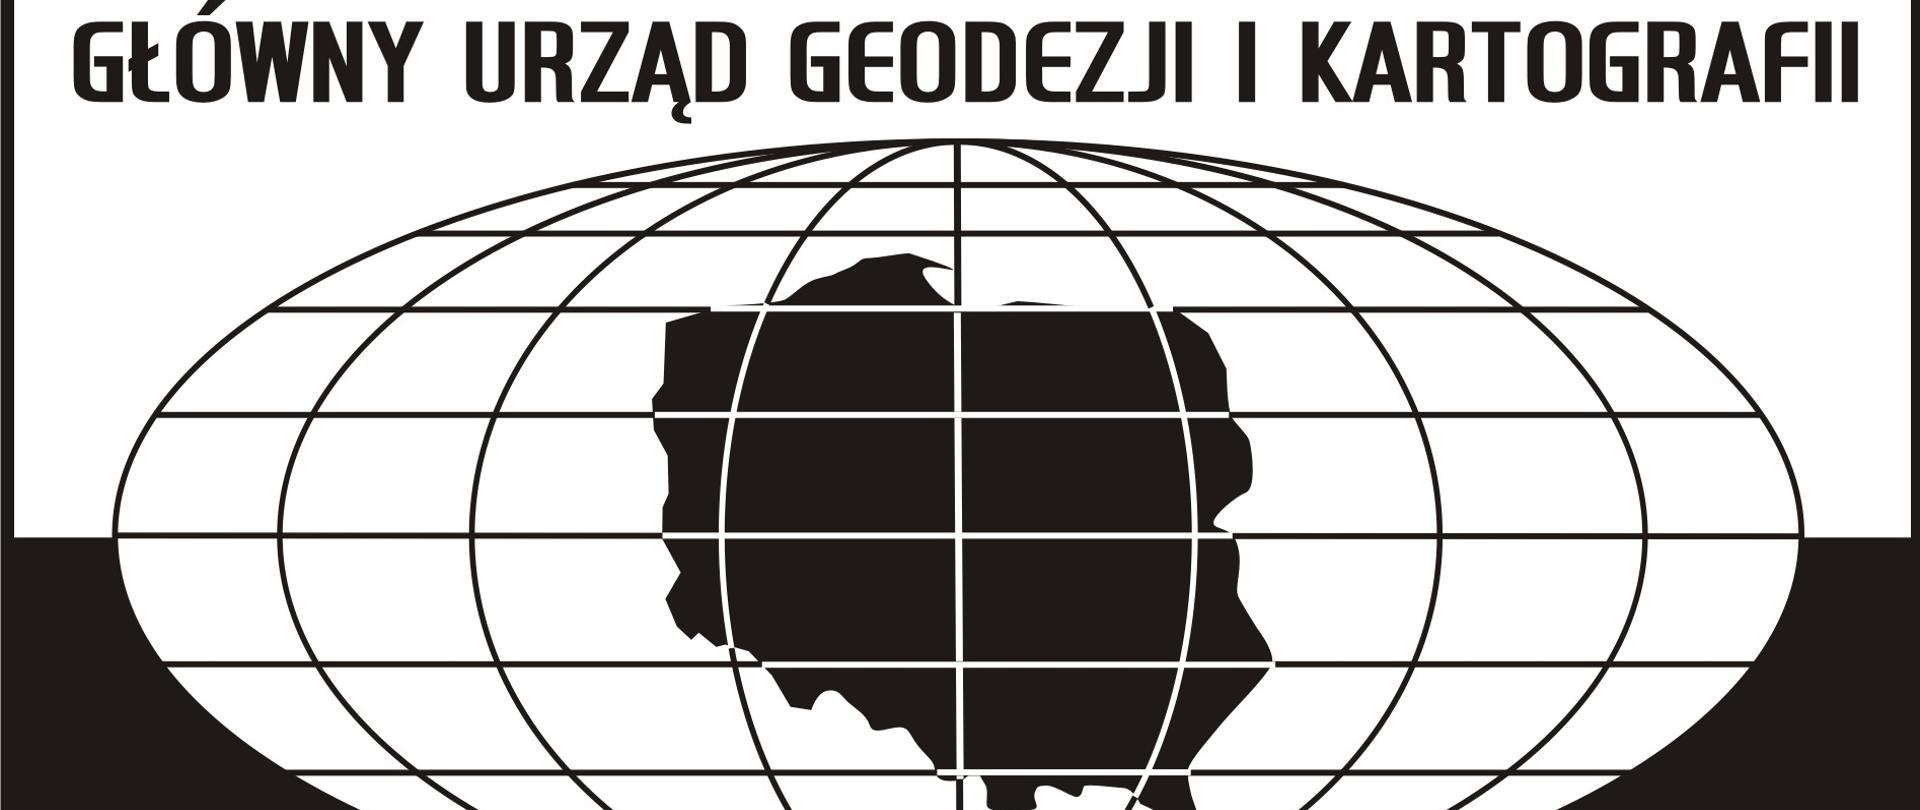 ilustracja przedstawia biało-czarne logo GUGiK